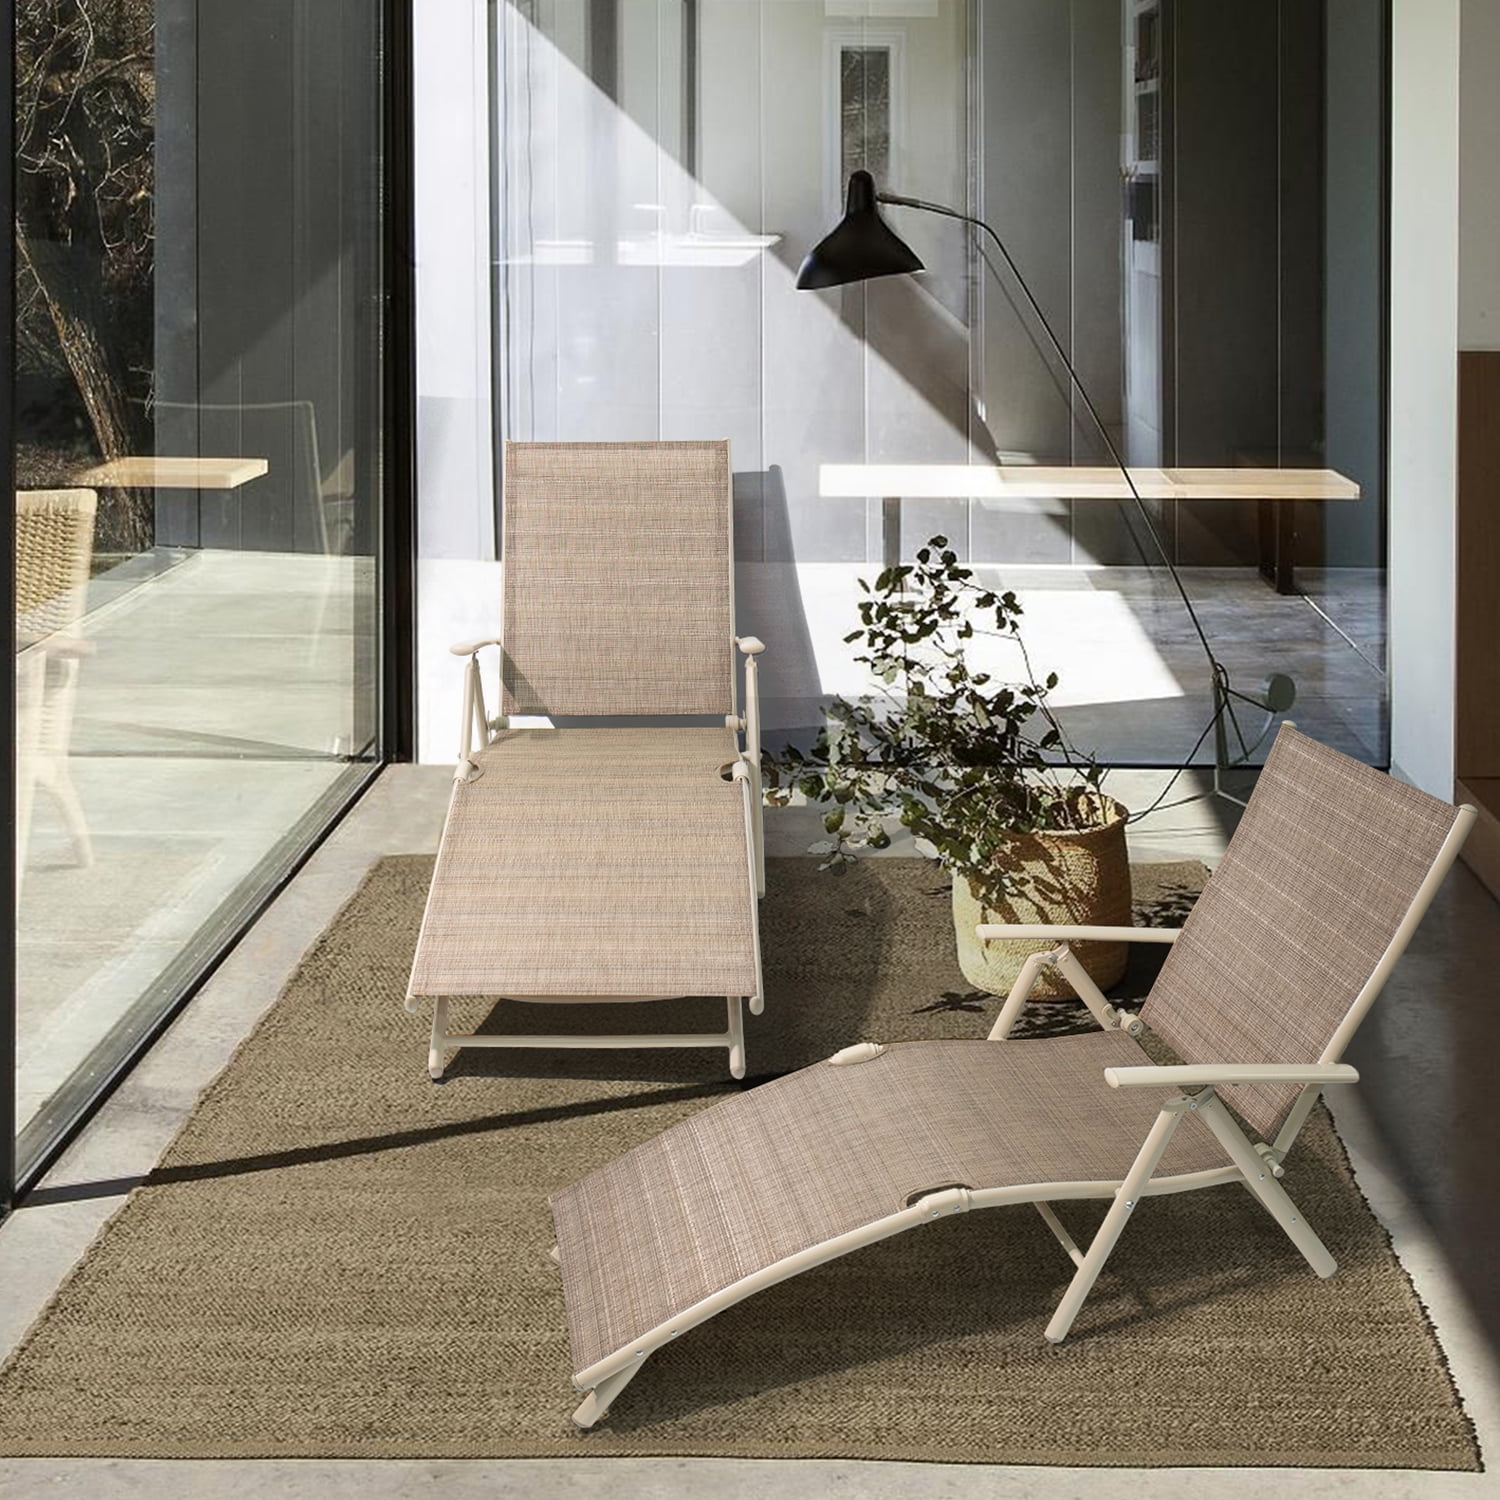 Wooden Sun lounger Adjustable Outdoor Garden Loungers Portable Wheel Patio Table 